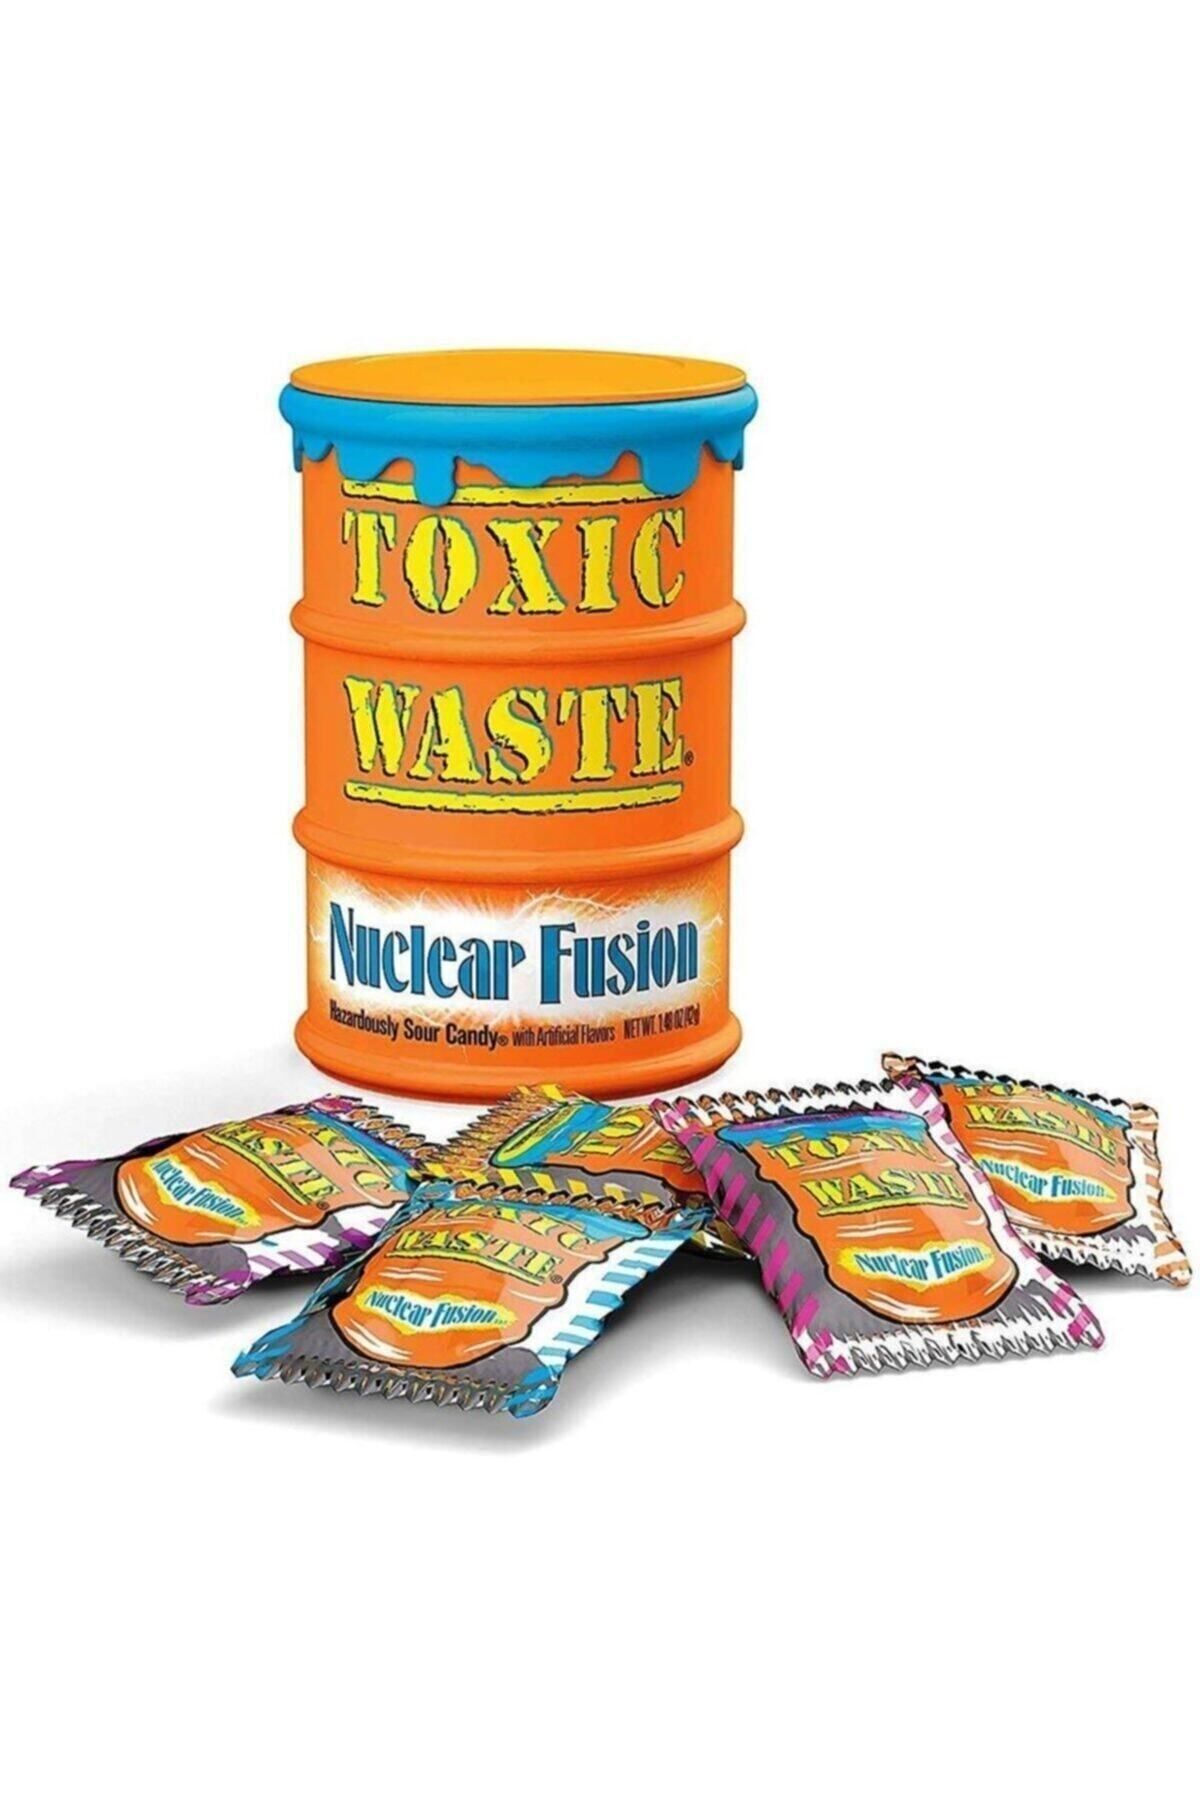 Toxic Waste Nuclear Fusion Ekşi Şeker 42gr